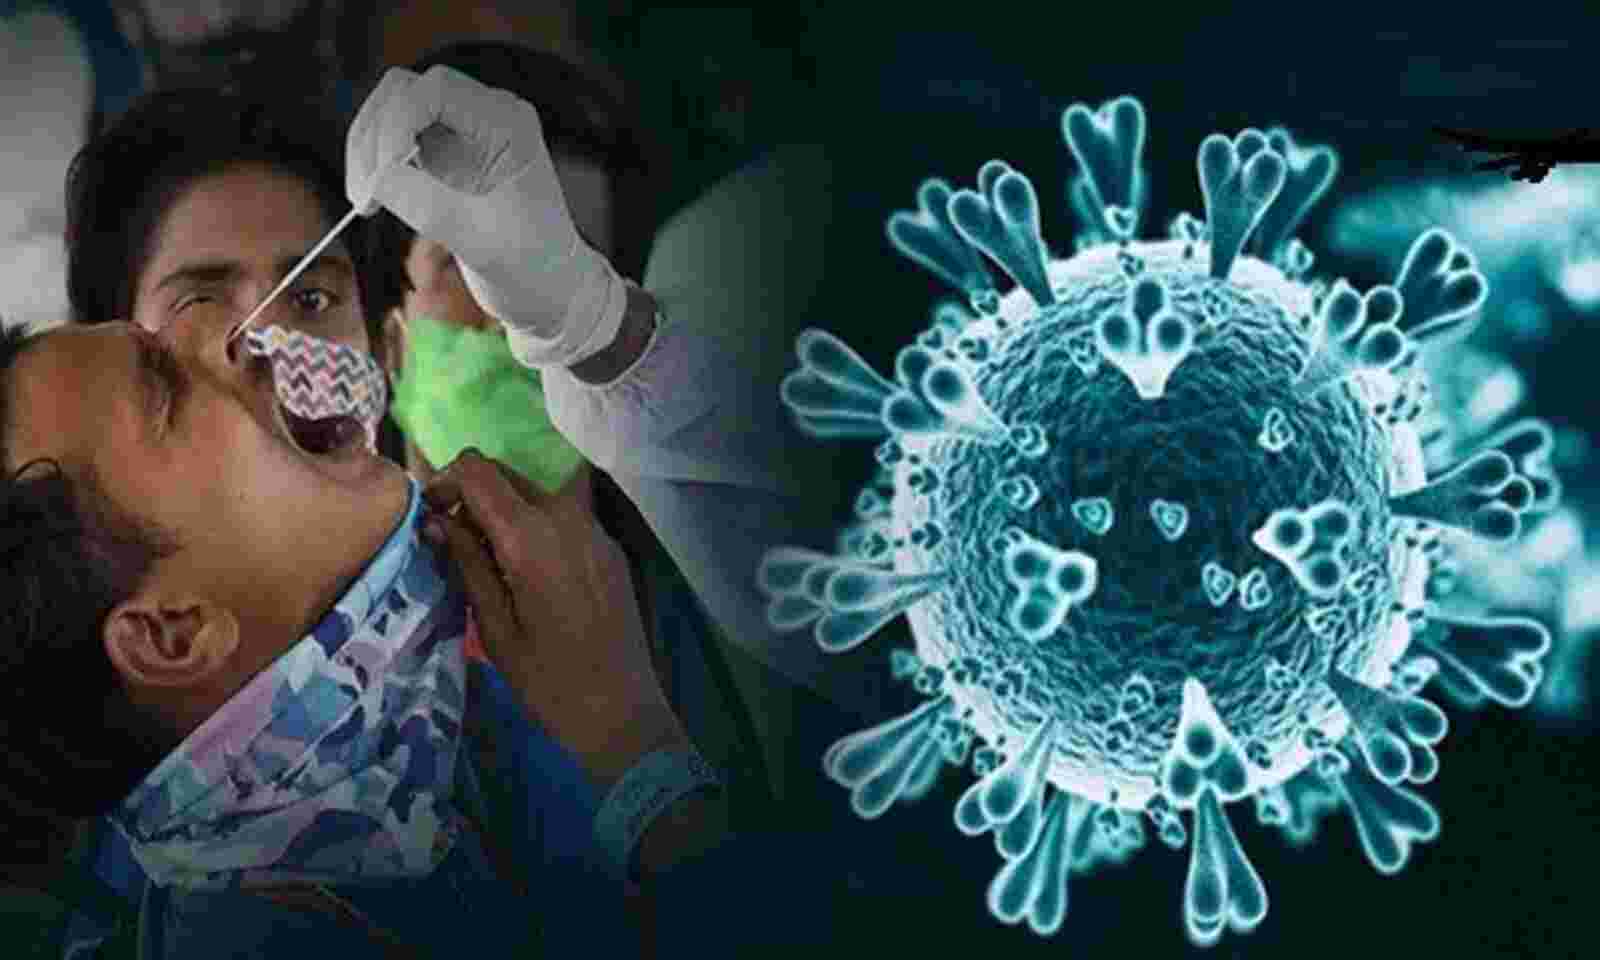 Covid-19 4th wave डराता है! भारत में 18,815 नए संक्रमण दर्ज, सक्रिय मामलों में वृद्धि